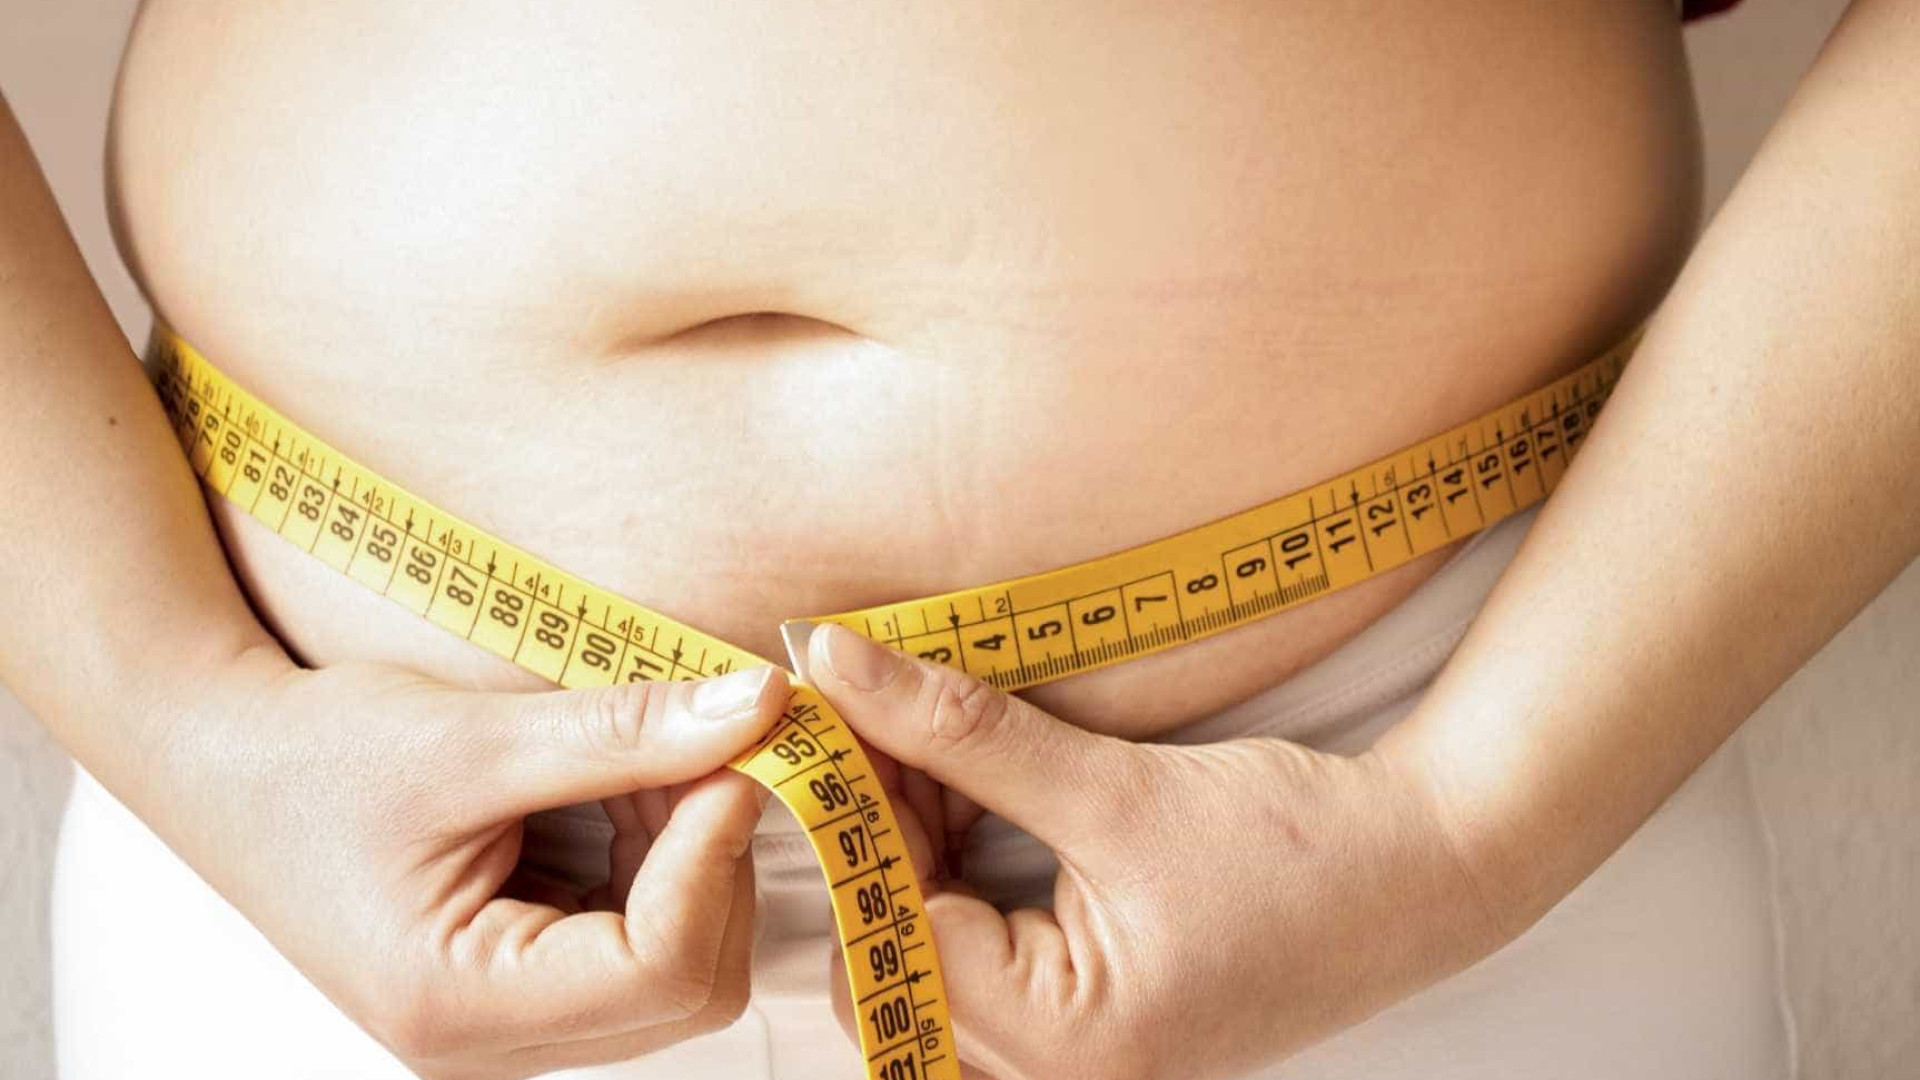 Obesidade: A epidemia do século XXI. Portugal está no pelotão da frente